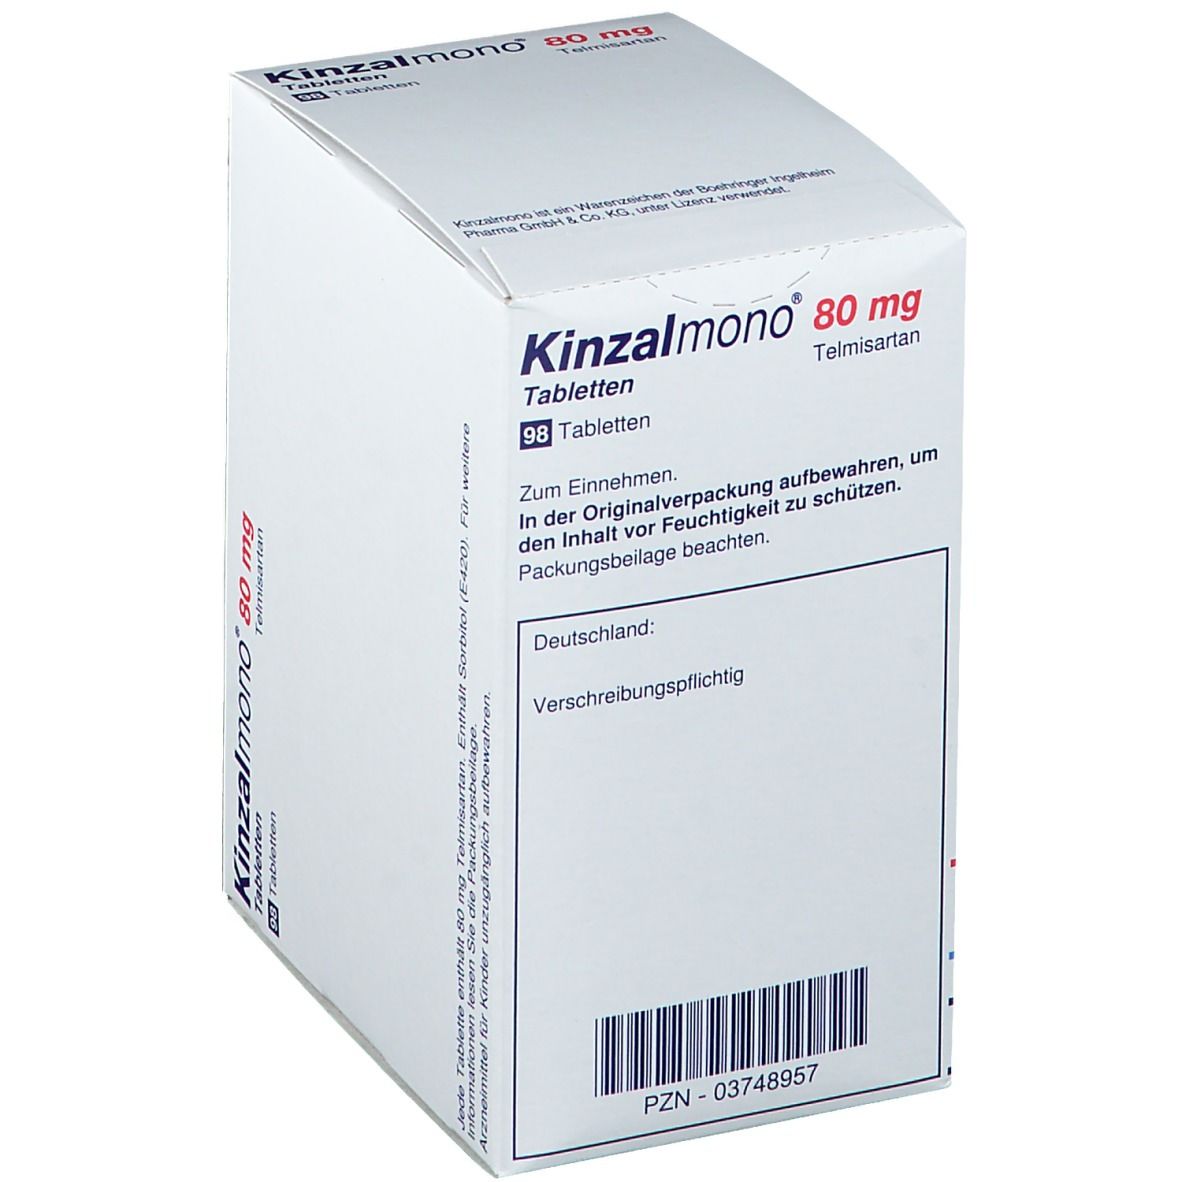 Kinzalmono® 80 mg